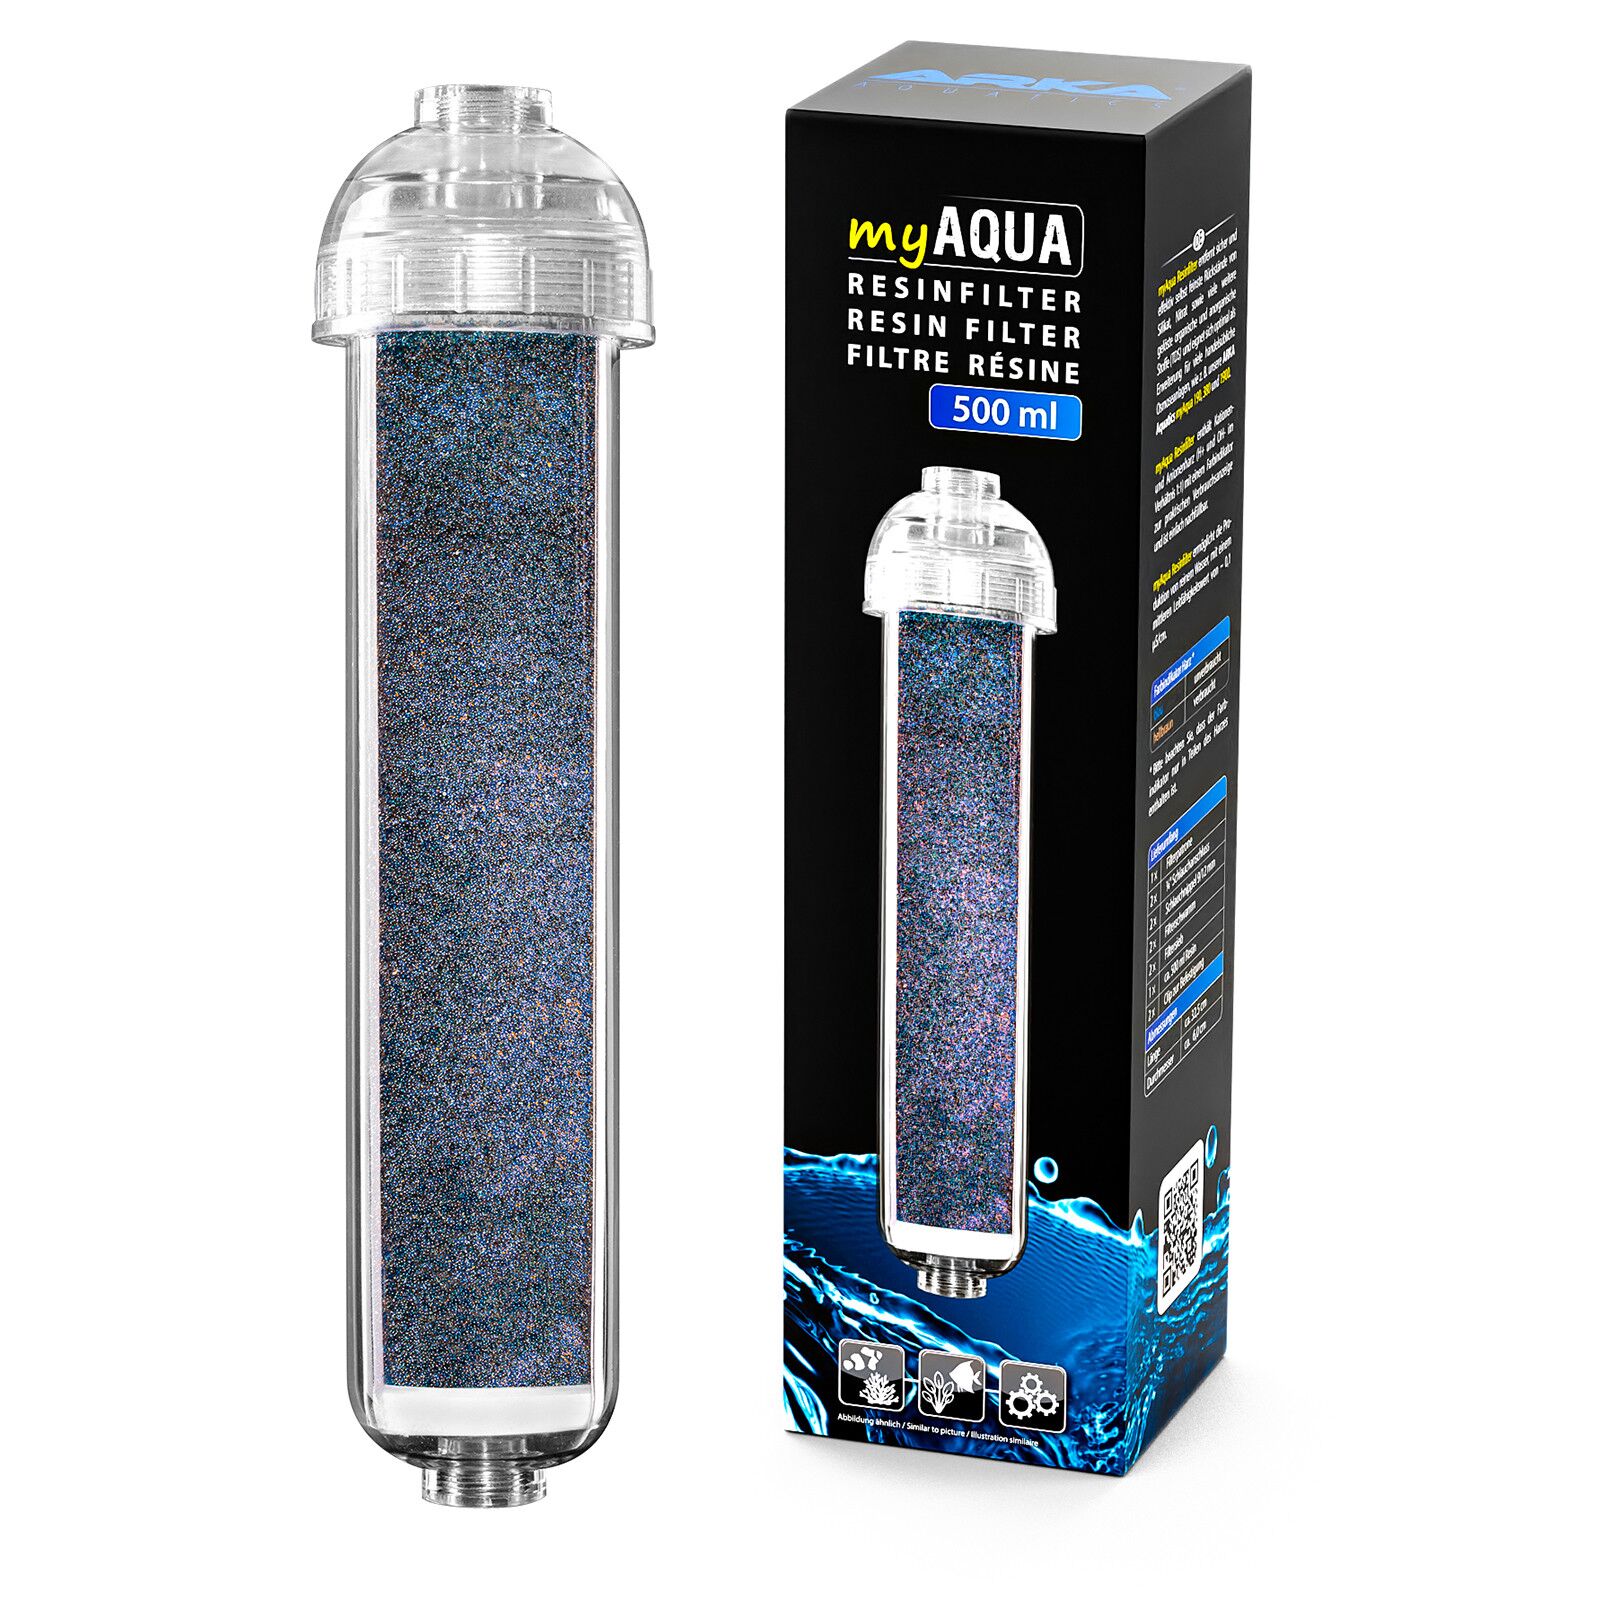 ARKA - myAqua Resin filter